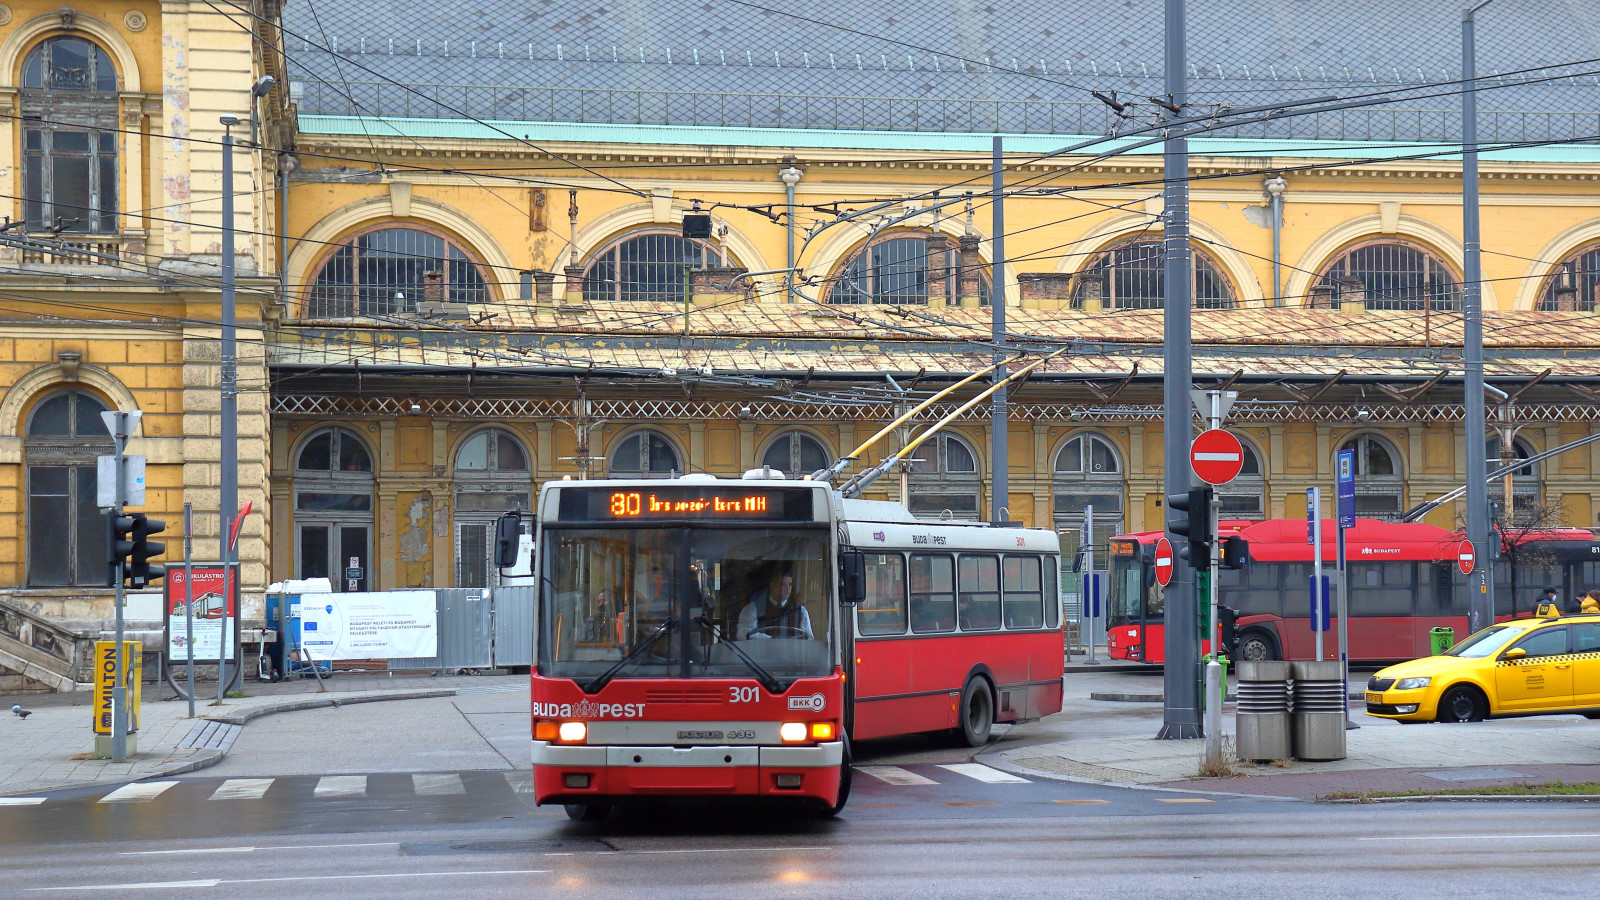 Будапешт, Ikarus 435.81M № 301